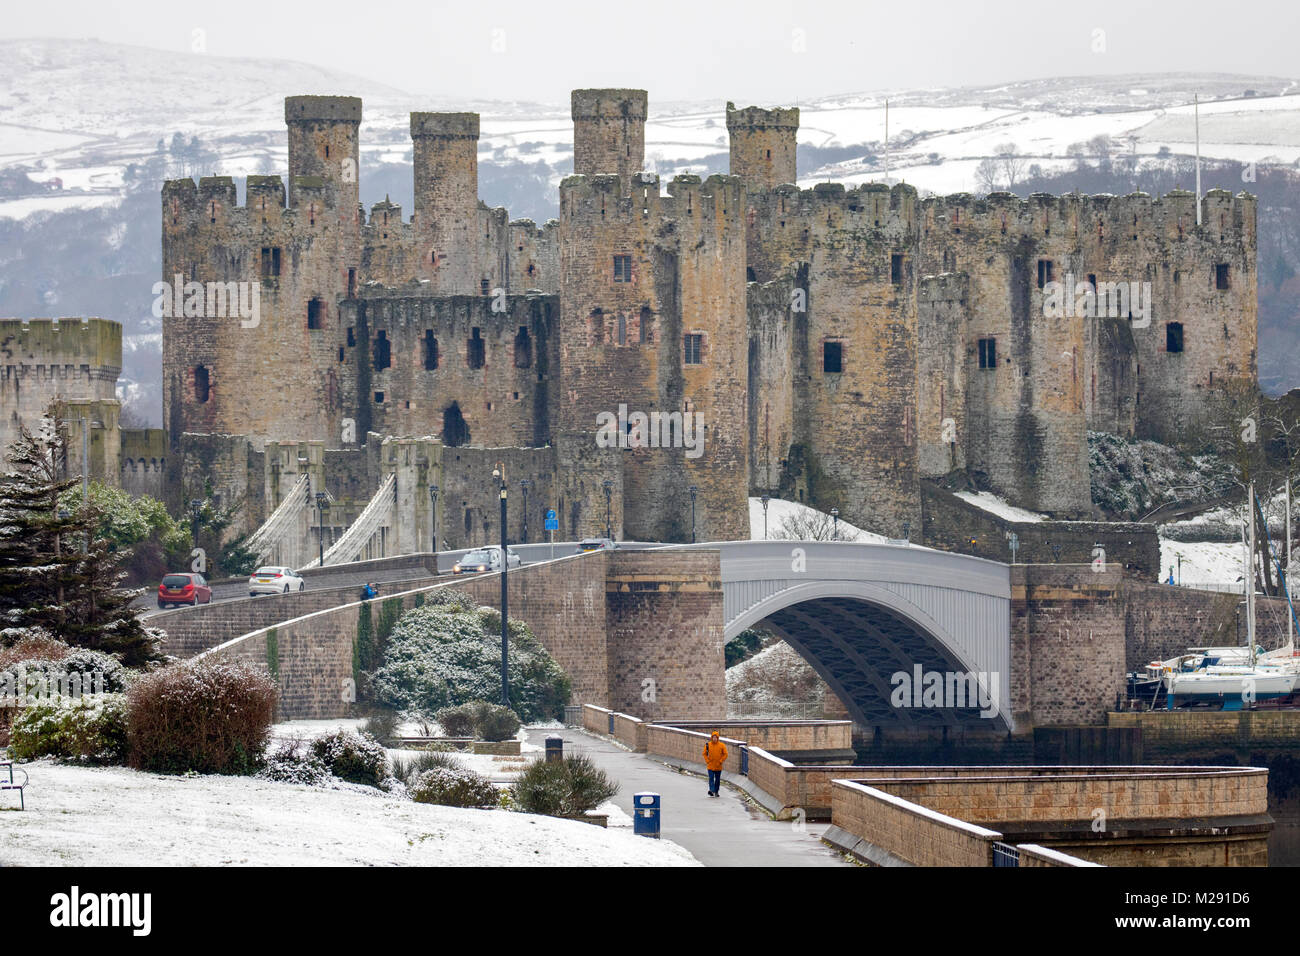 Conwy, Pays de Galles, Royaume-Uni Le 6 février 2018, UK Météo : temps froid et de la neige dans de nombreuses régions du Royaume-Uni aujourd'hui notamment avec le Château de Conwy Conwy entouré par un paysage couvert de neige Banque D'Images